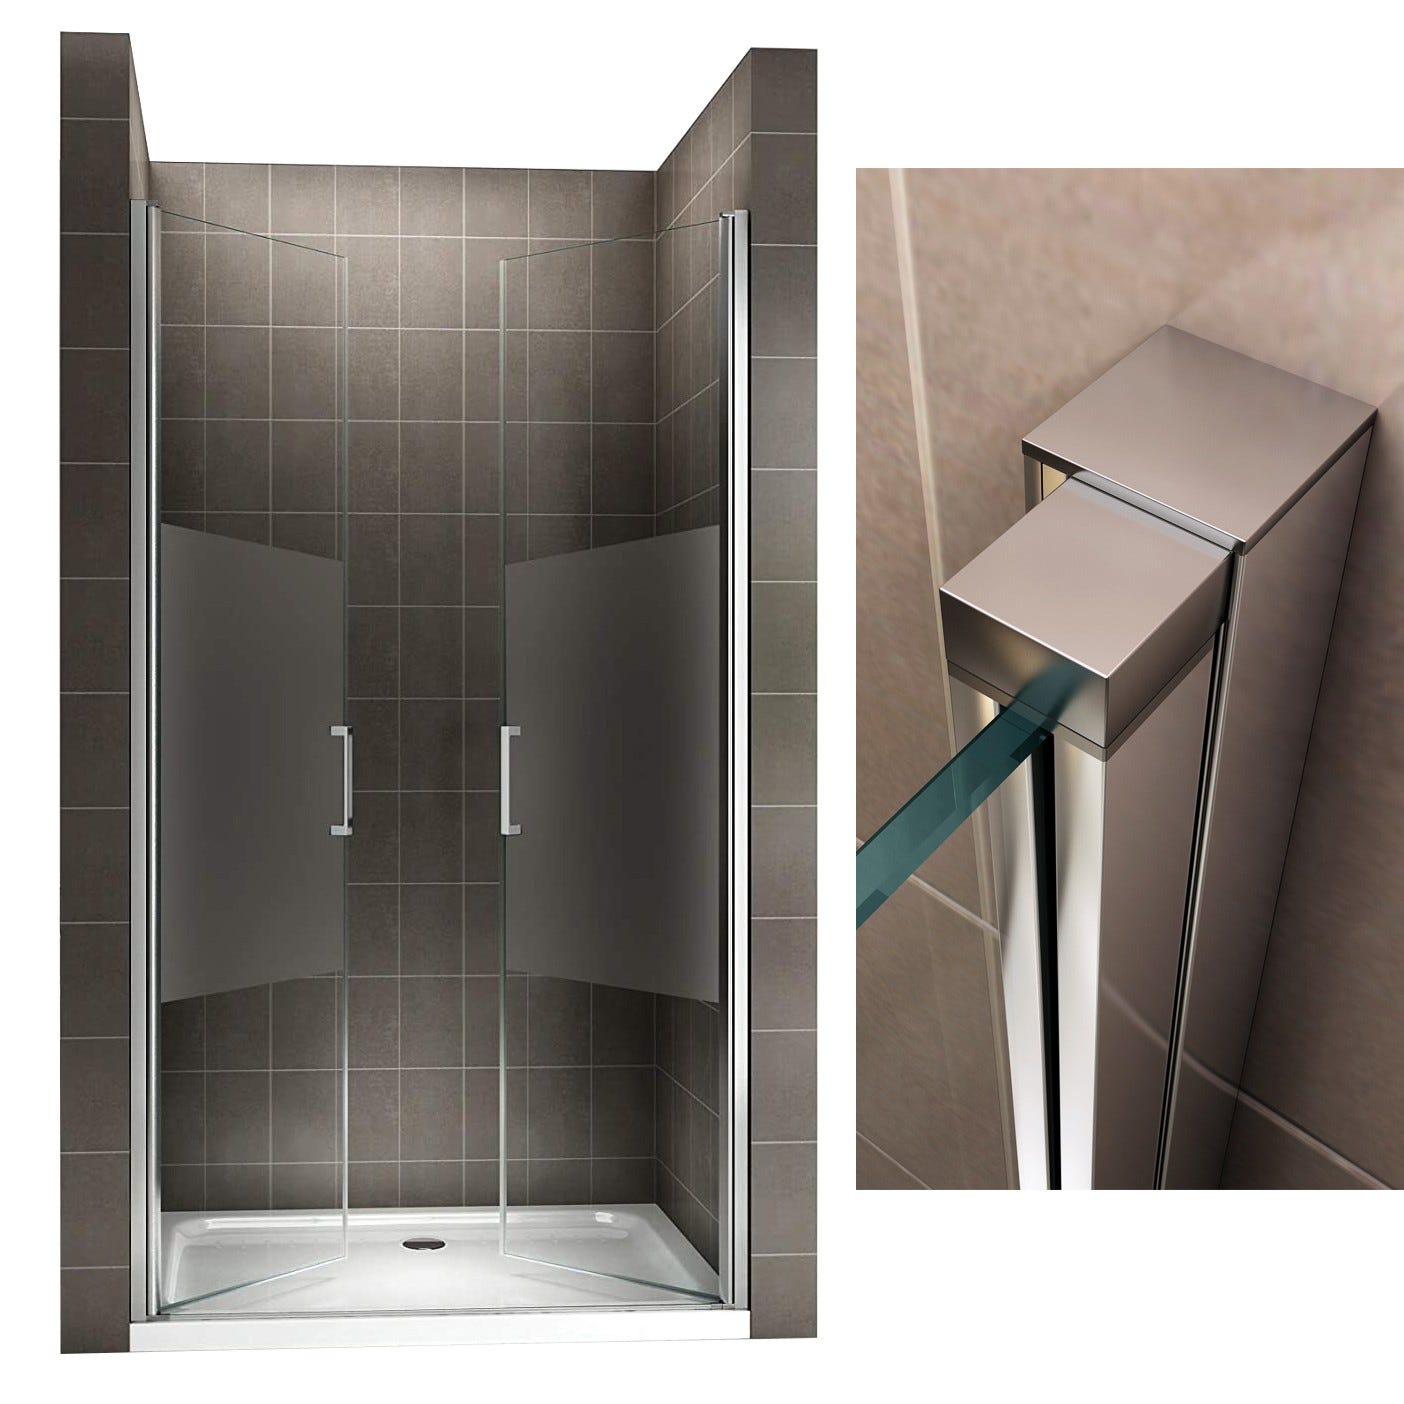 KAYA Porte de douche H 180 largeur réglable 80 à 83 cm verre semi-opaque 3